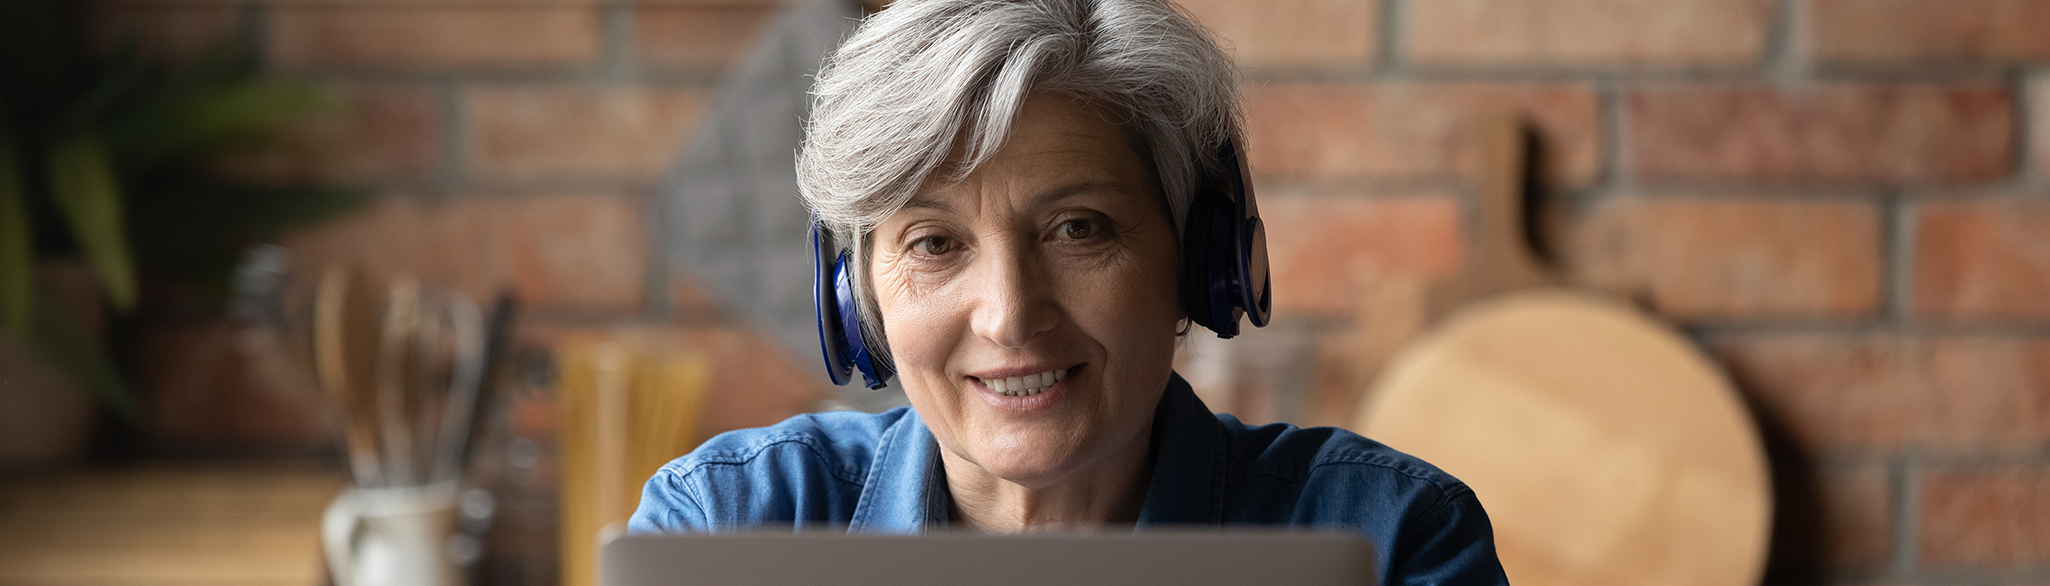 Kvinna med hörlurar framför datorn